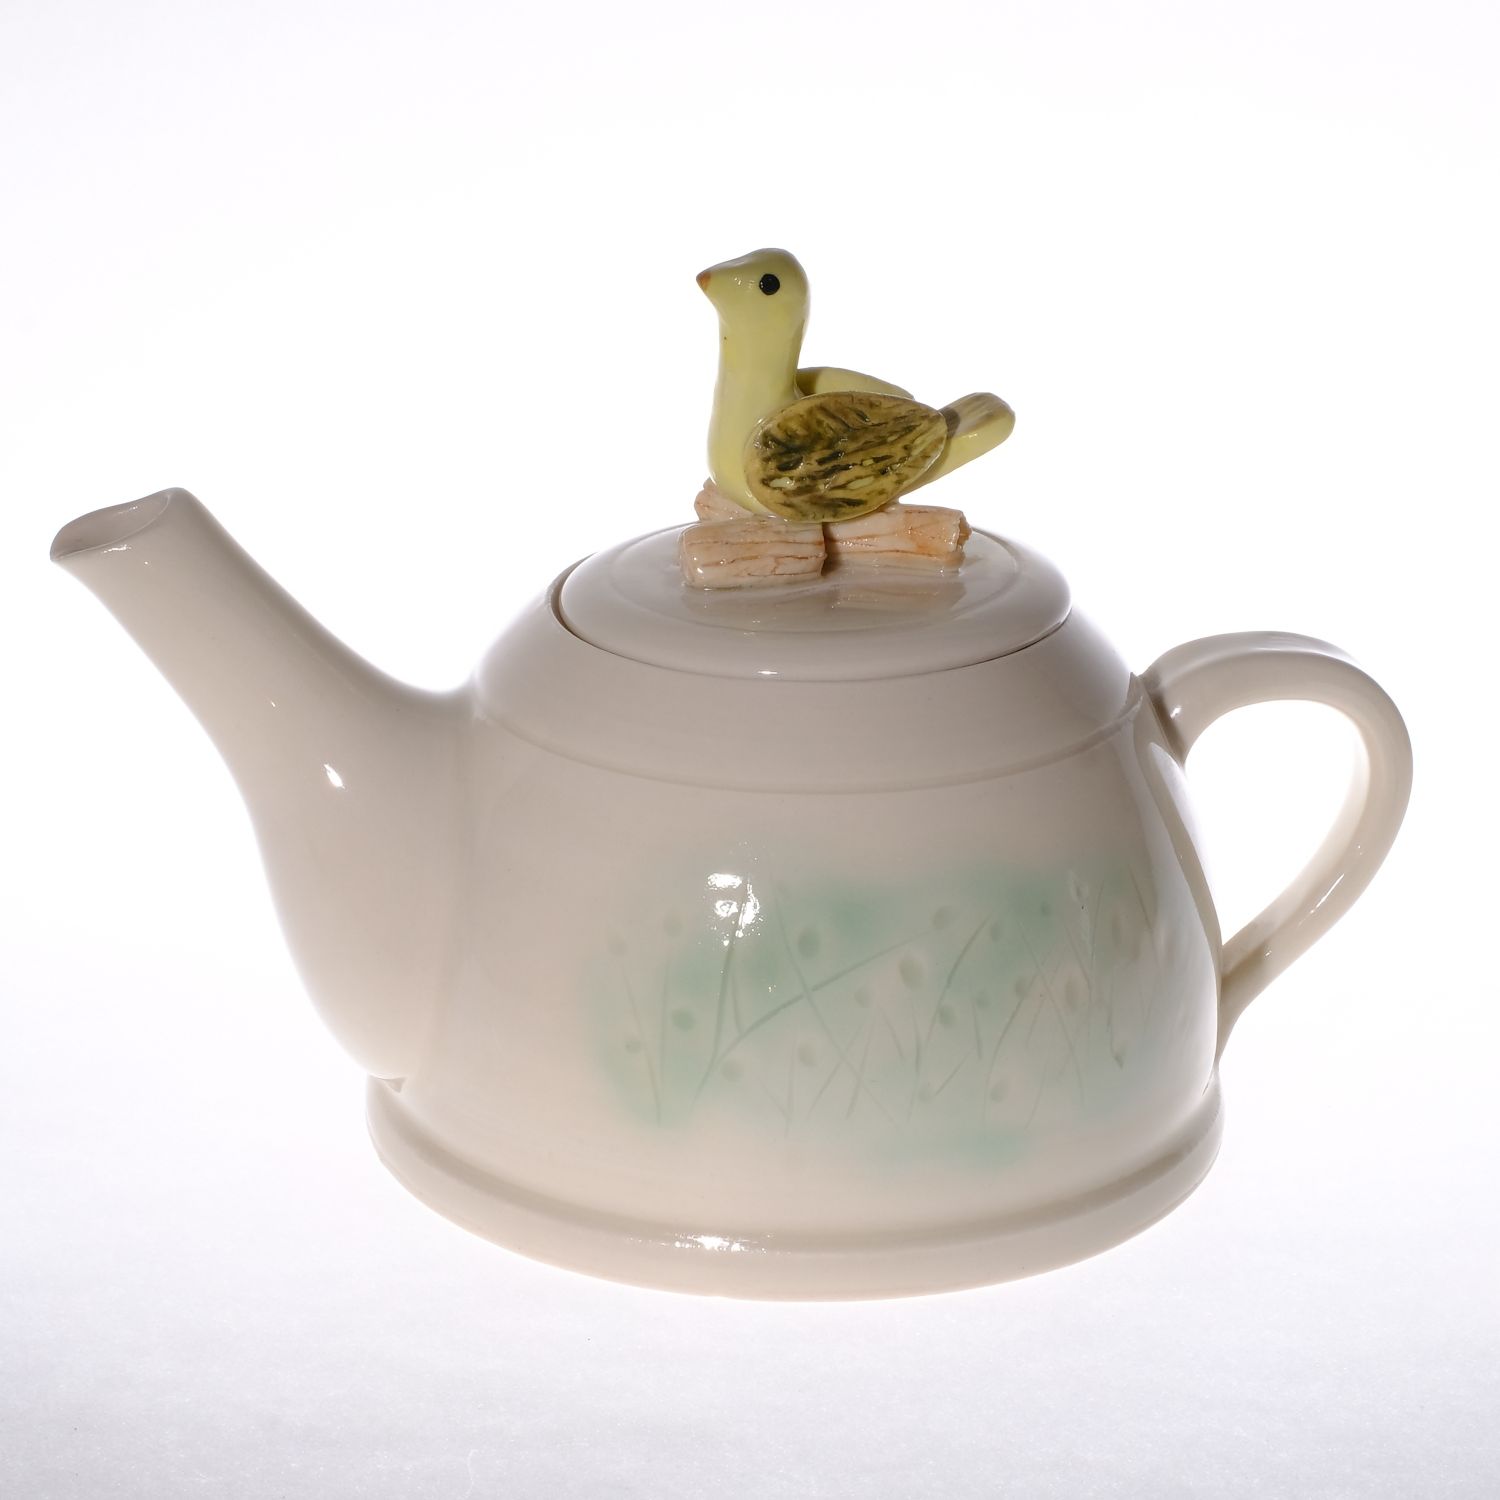 Yumiko Katsuya: Teapot with Bird Product Image 1 of 2